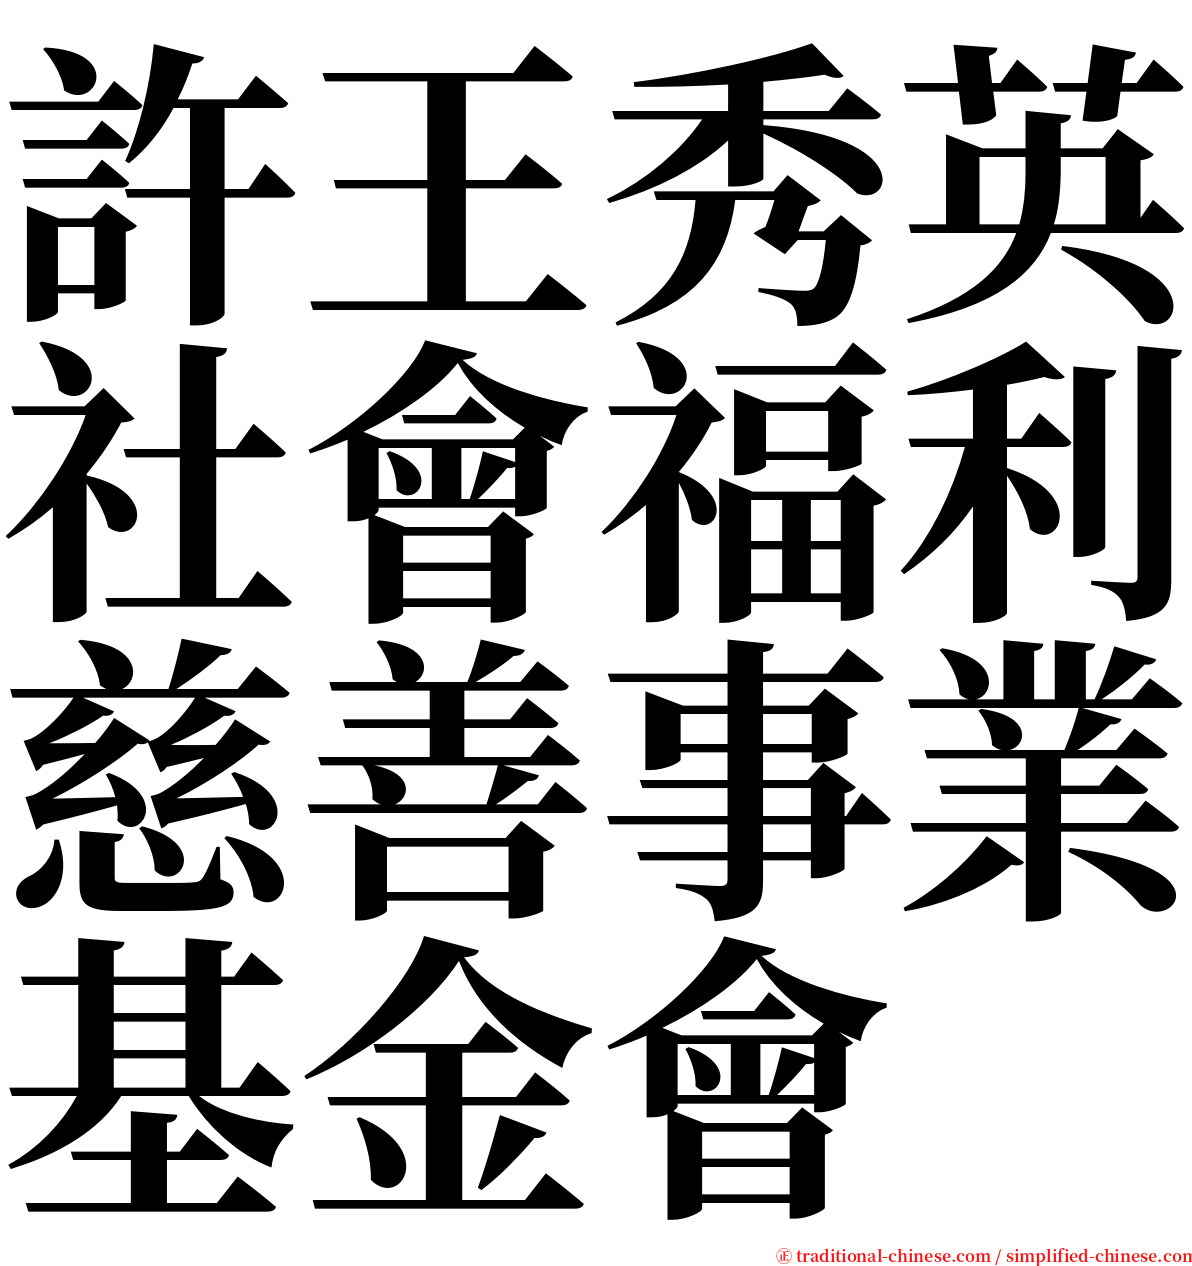 許王秀英社會福利慈善事業基金會 serif font